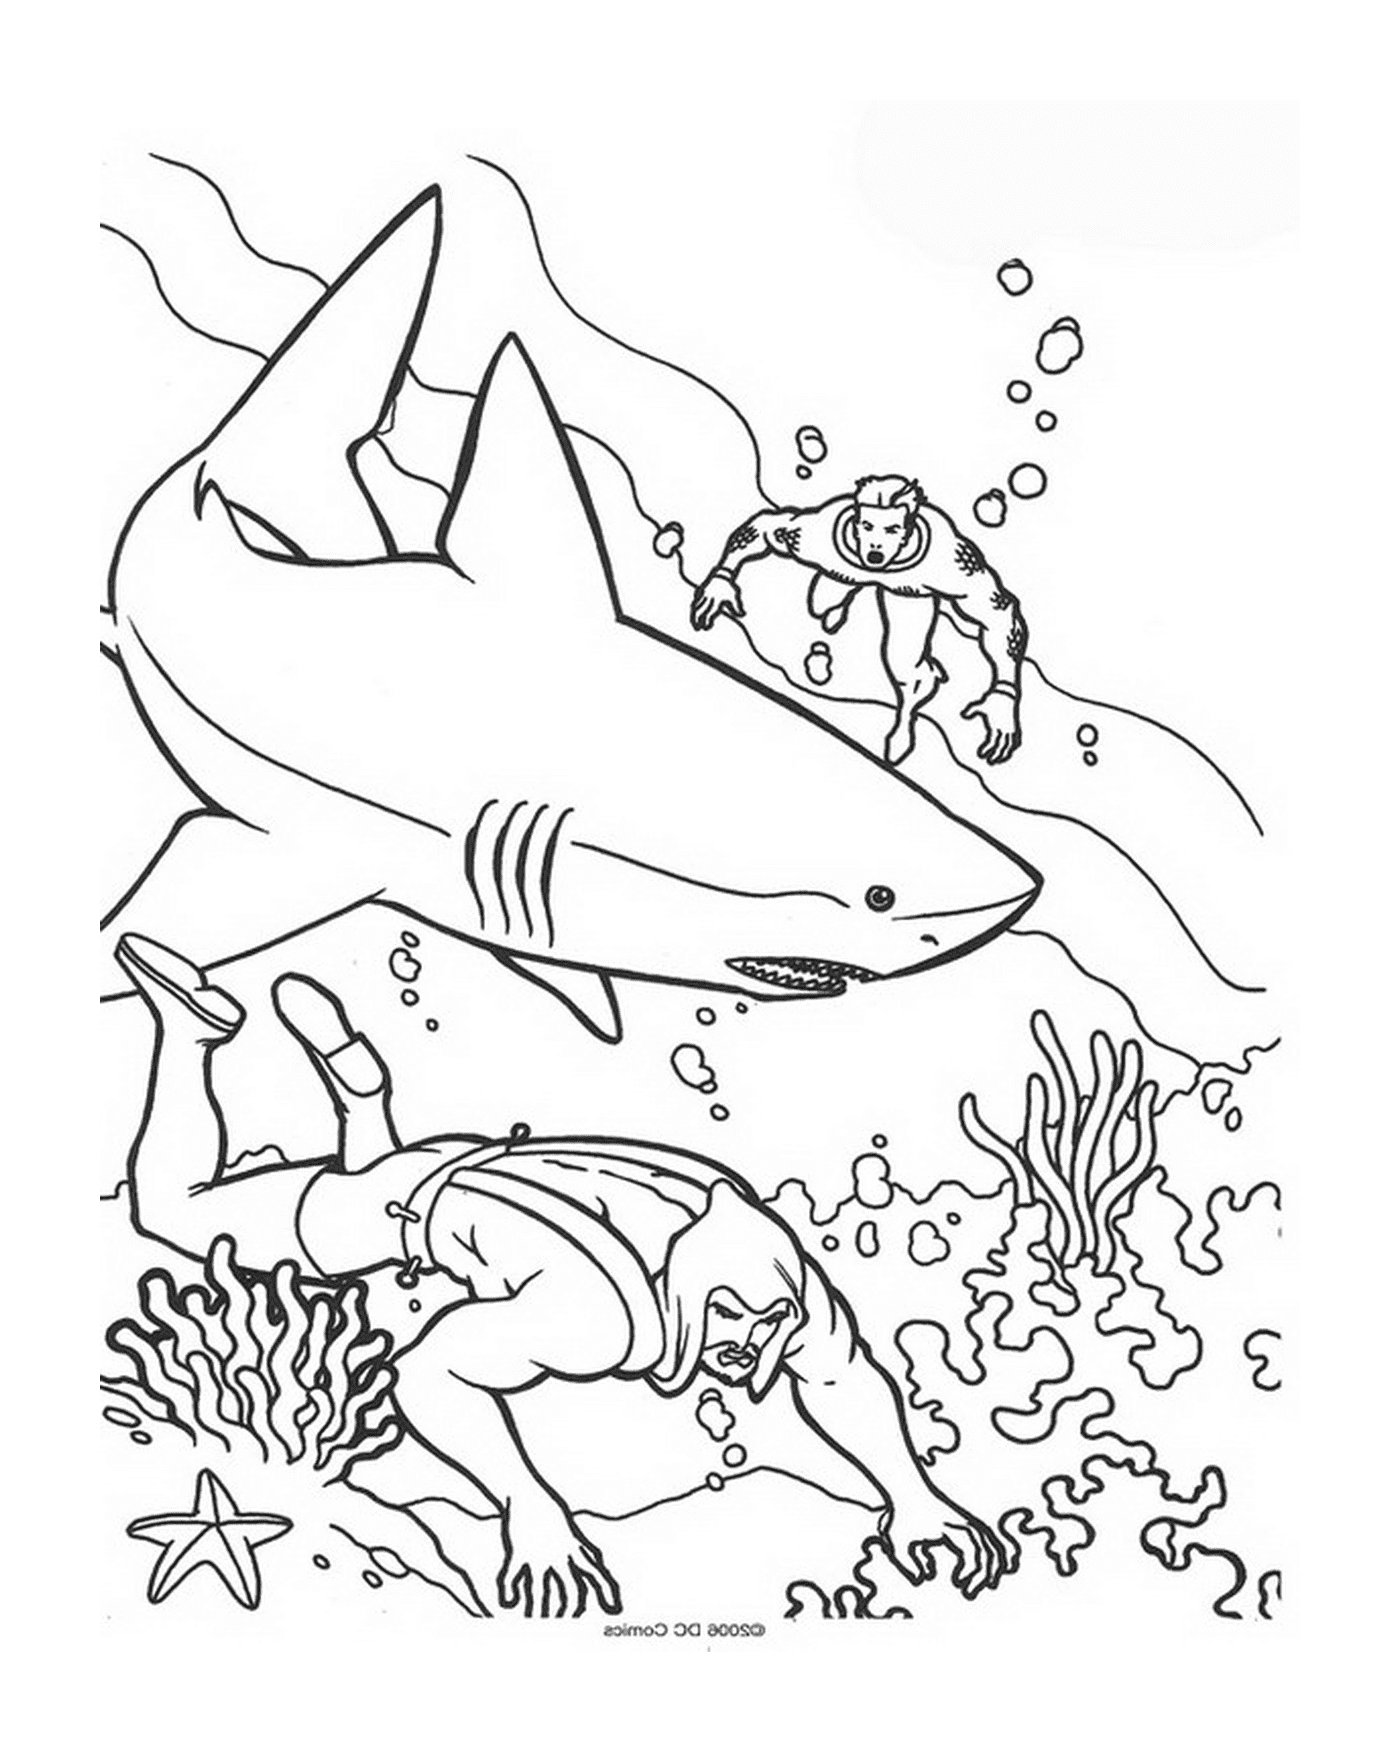  Um homem e uma mulher nadando no oceano com tubarões 